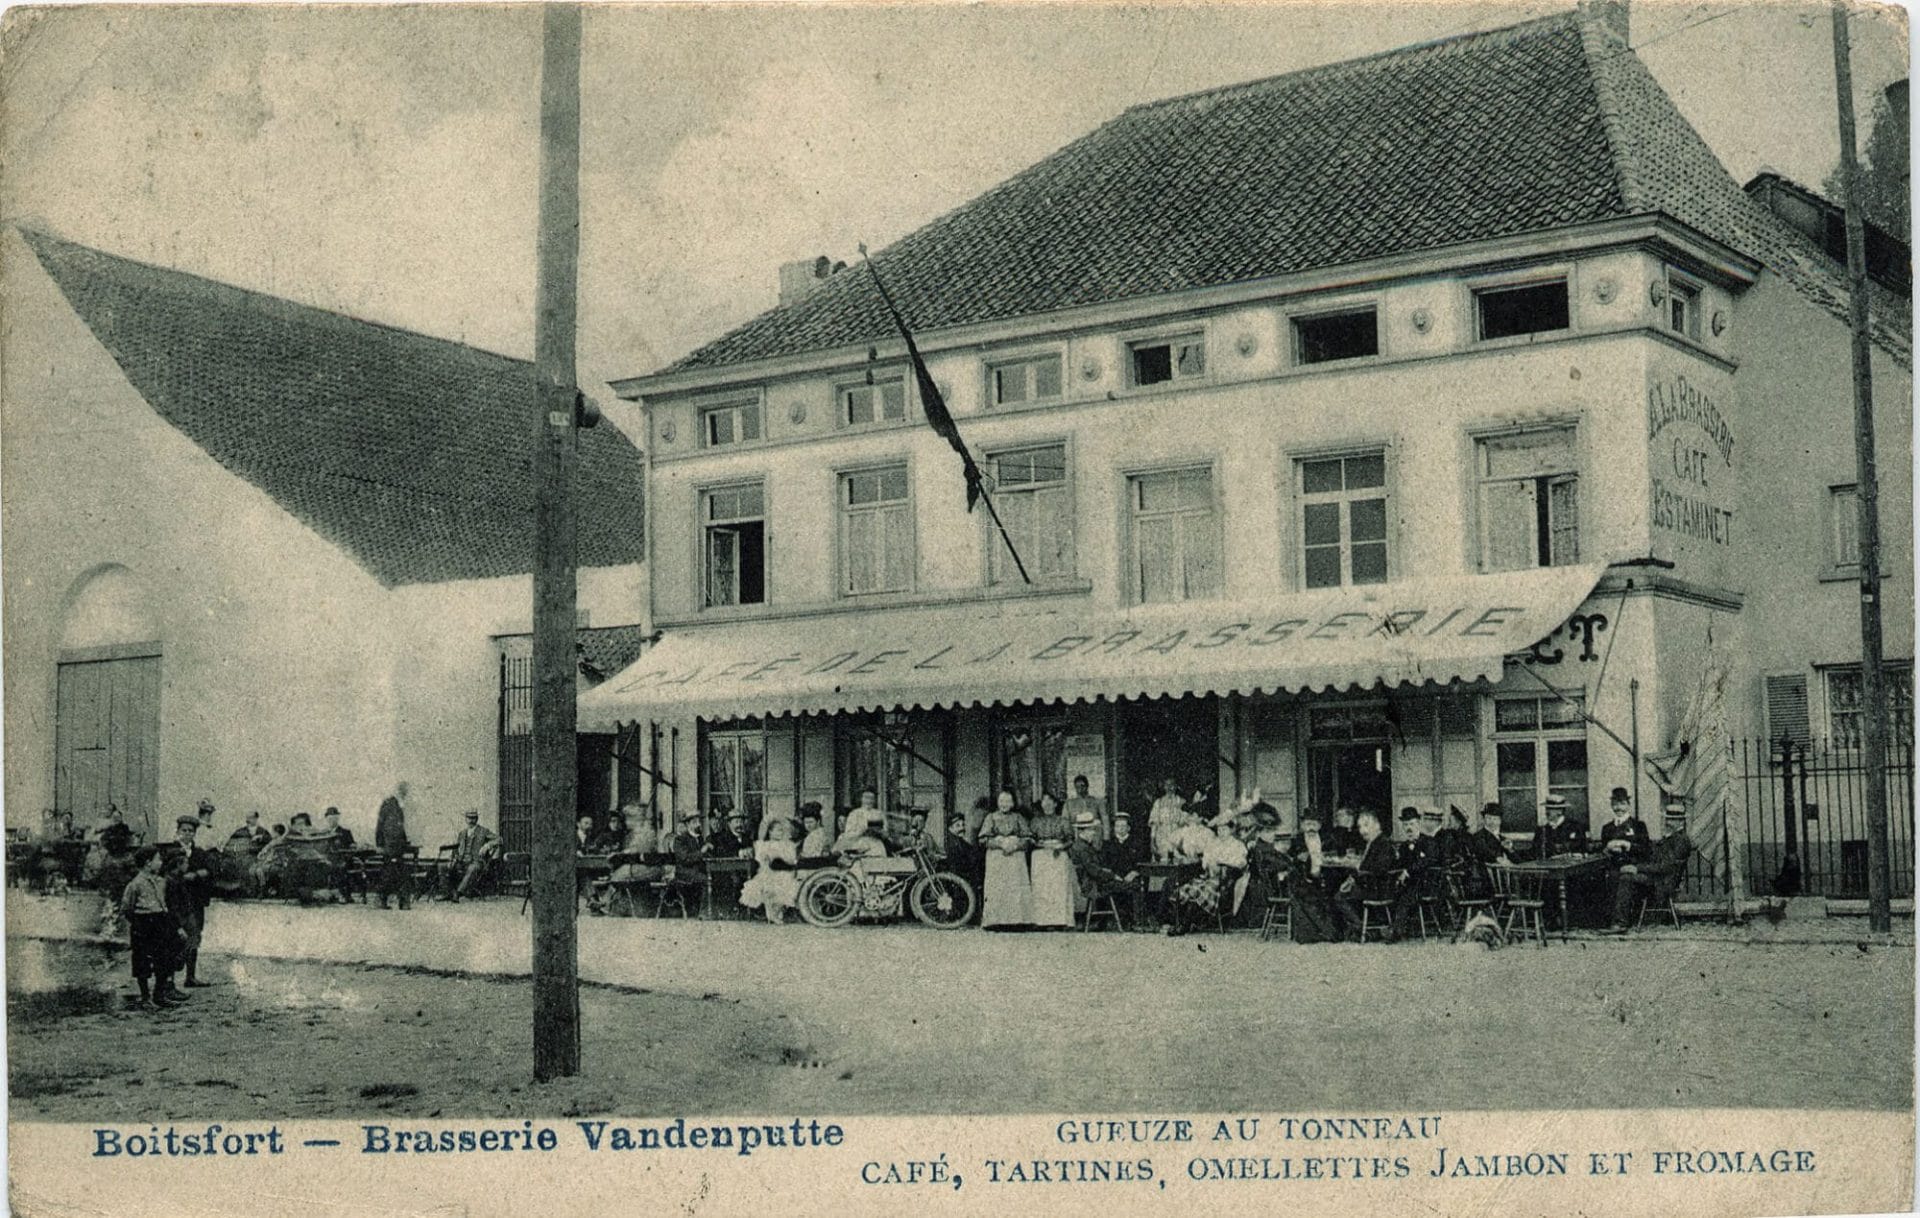 Le café de la Brasserie exploité par Vandenputte. A gauche, la grange. Les bâtiments de la brasserie ne sont pas visibles - Carte postale, vers 1905.